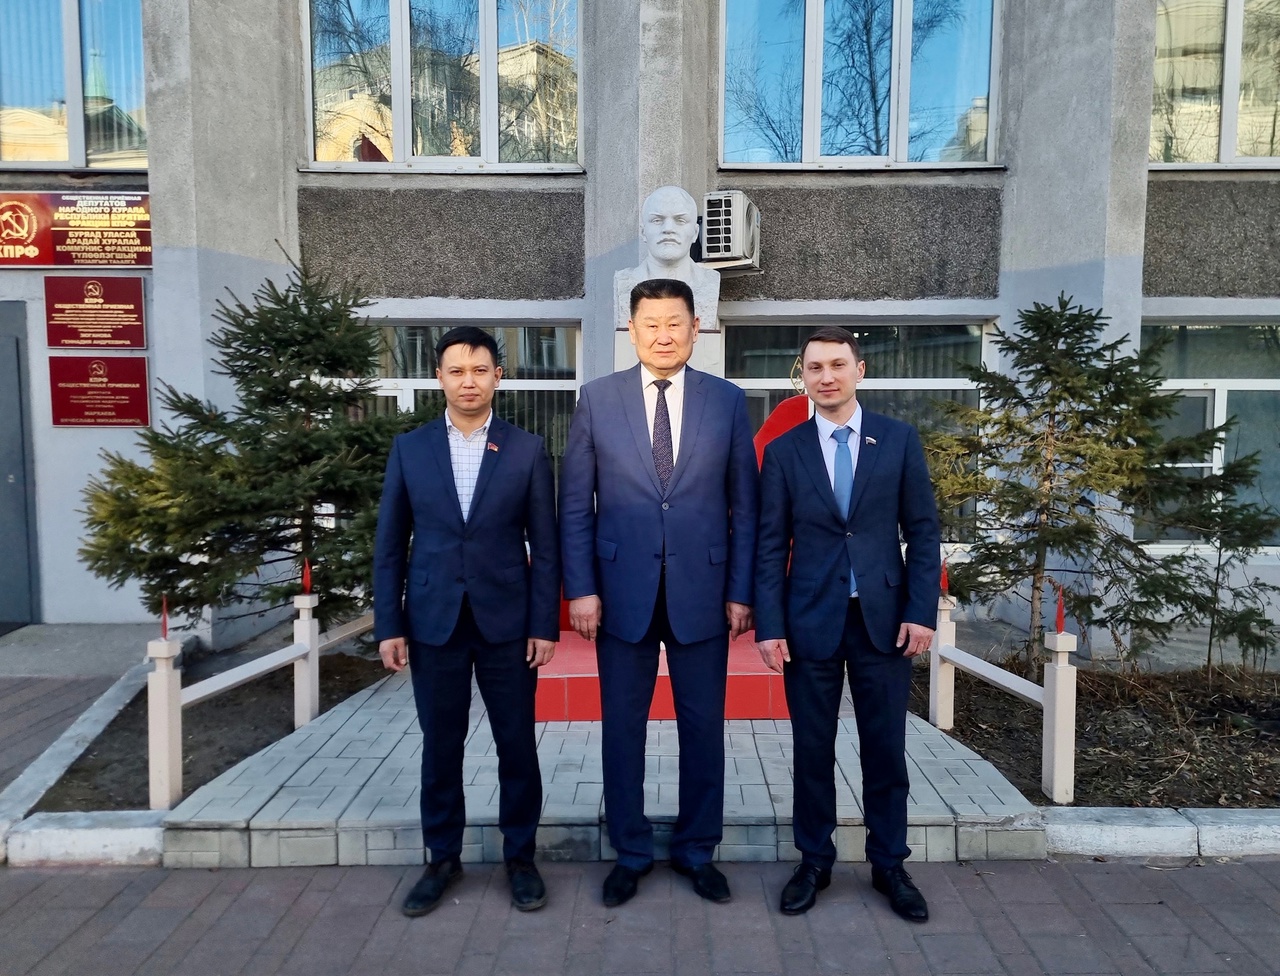 Находясь в Улан-Удэ, встретился с нашими товарищами, в том числе моим коллегой — депутатом Госдумы, избранным от Республики Бурятия, Вячеславом Мархаевым. 